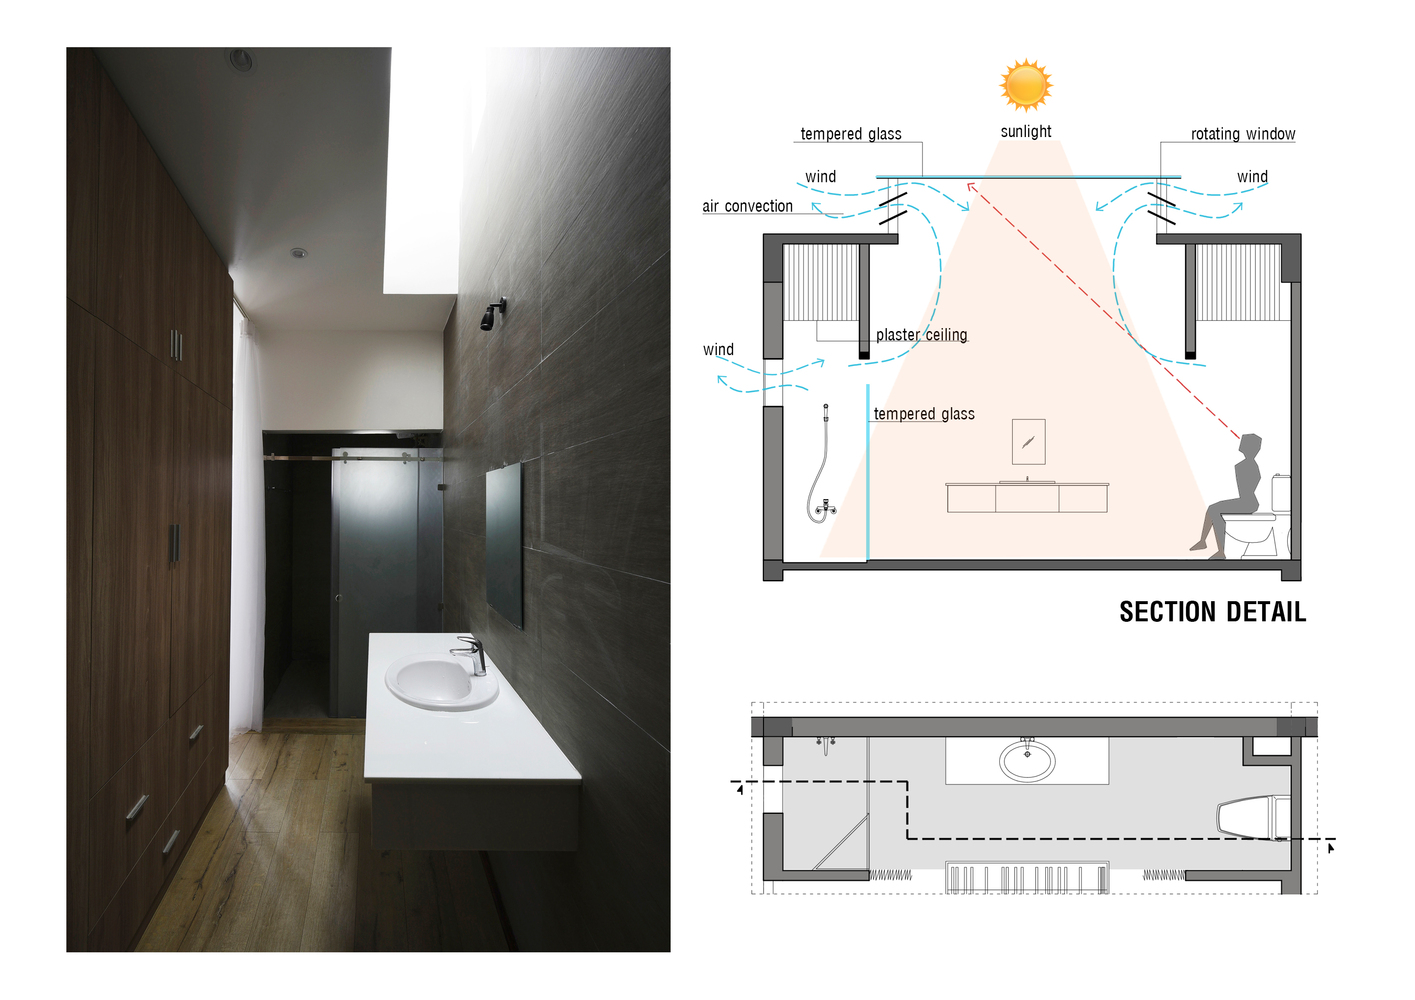 Hình ảnh một góc phòng vệ sinh với bồn rửa bằng sứ, ảnh bên cạnh là phối cảnh thiết kế phòng vệ sinh lấy sáng, thông gió từ giếng trời.